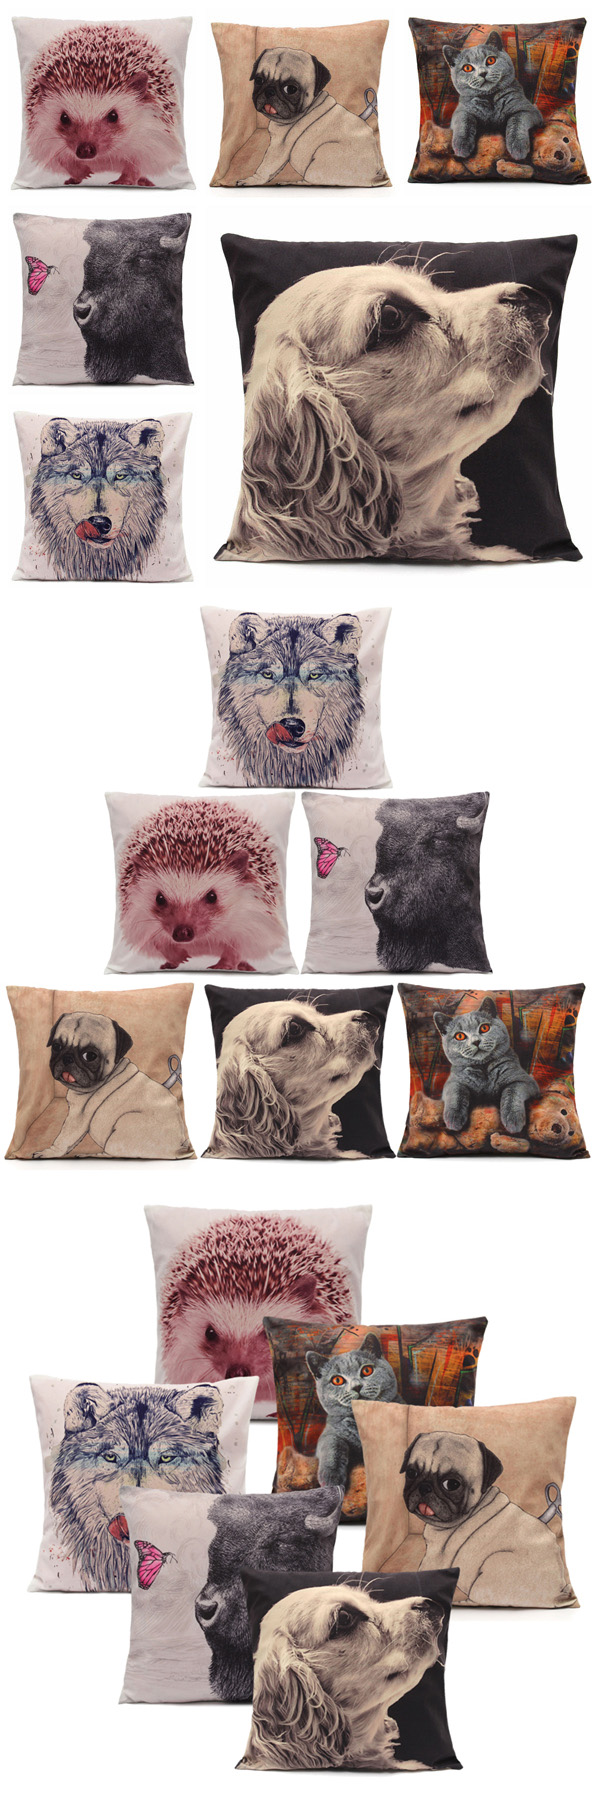 Vivid-3D-Animal-Short-Plush-Throw-Pillow-Case-Home-Sofa-Car-Cushion-Cover-1007487-1